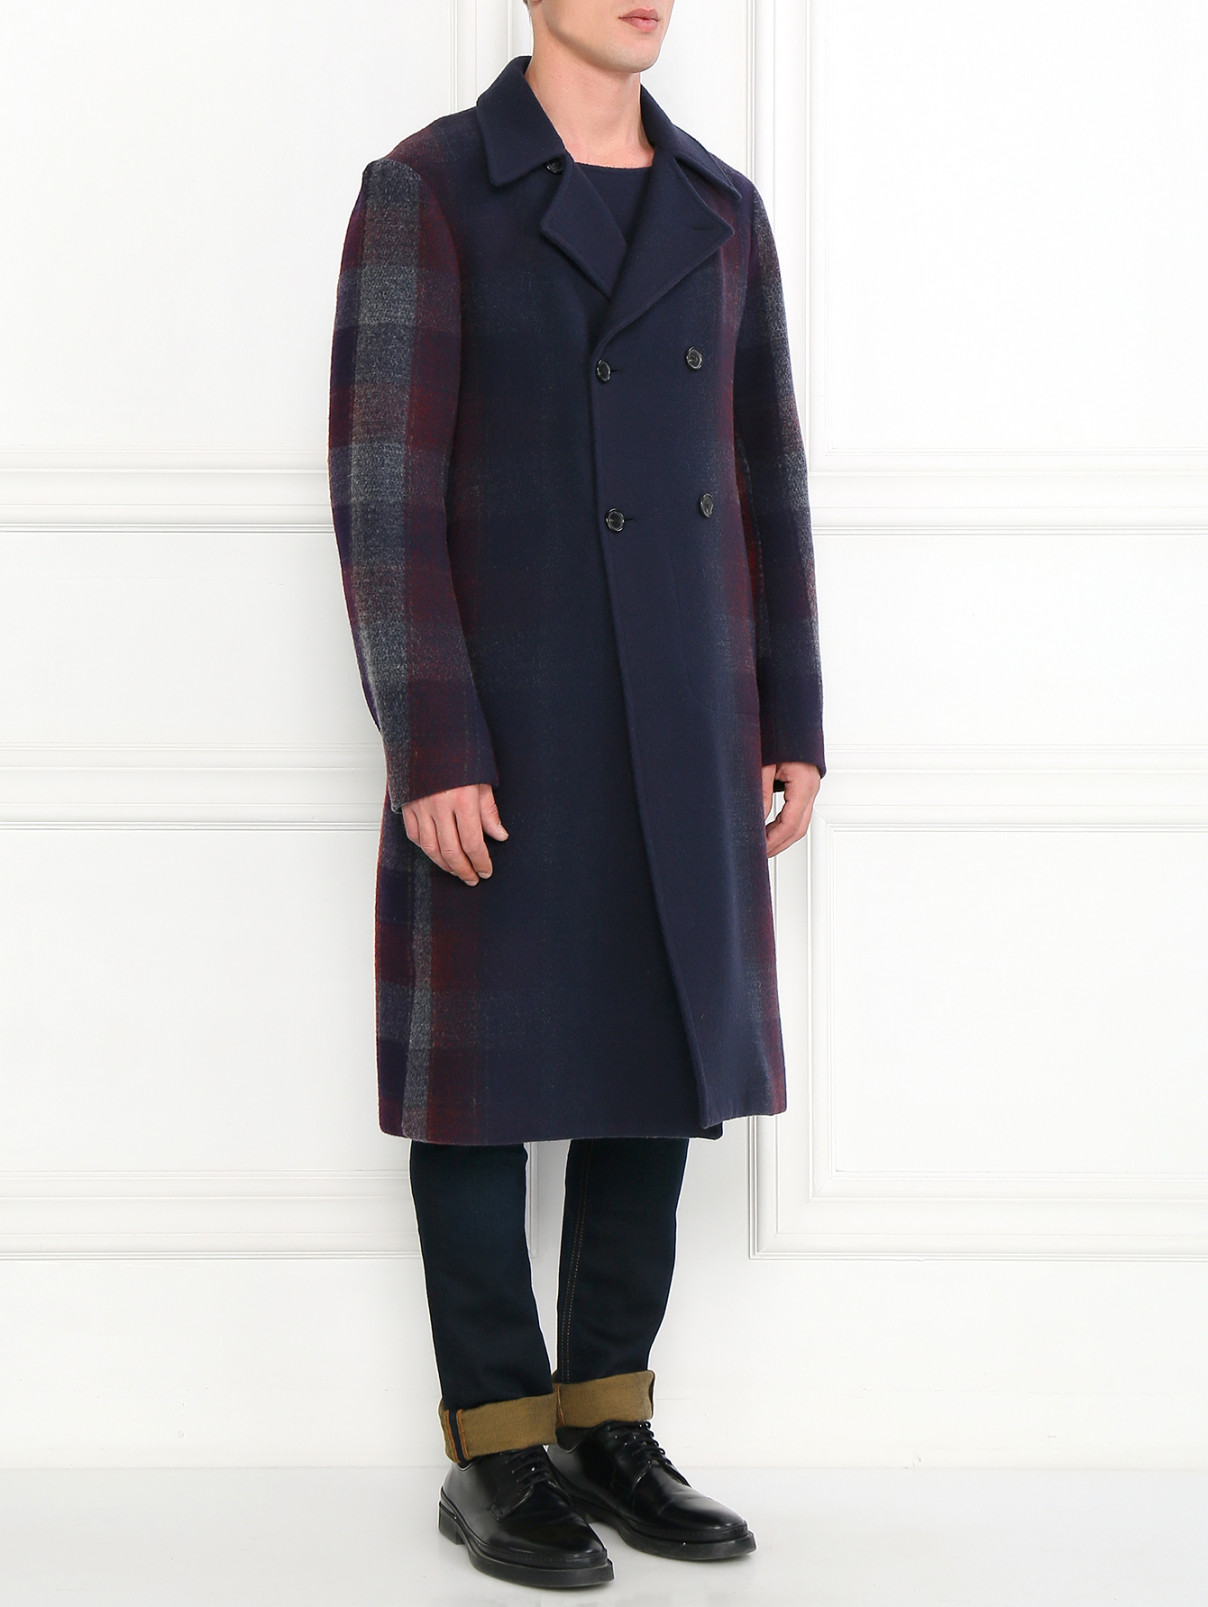 Пальто из шерсти с контрастными вставками Jil Sander  –  Модель Общий вид  – Цвет:  Синий